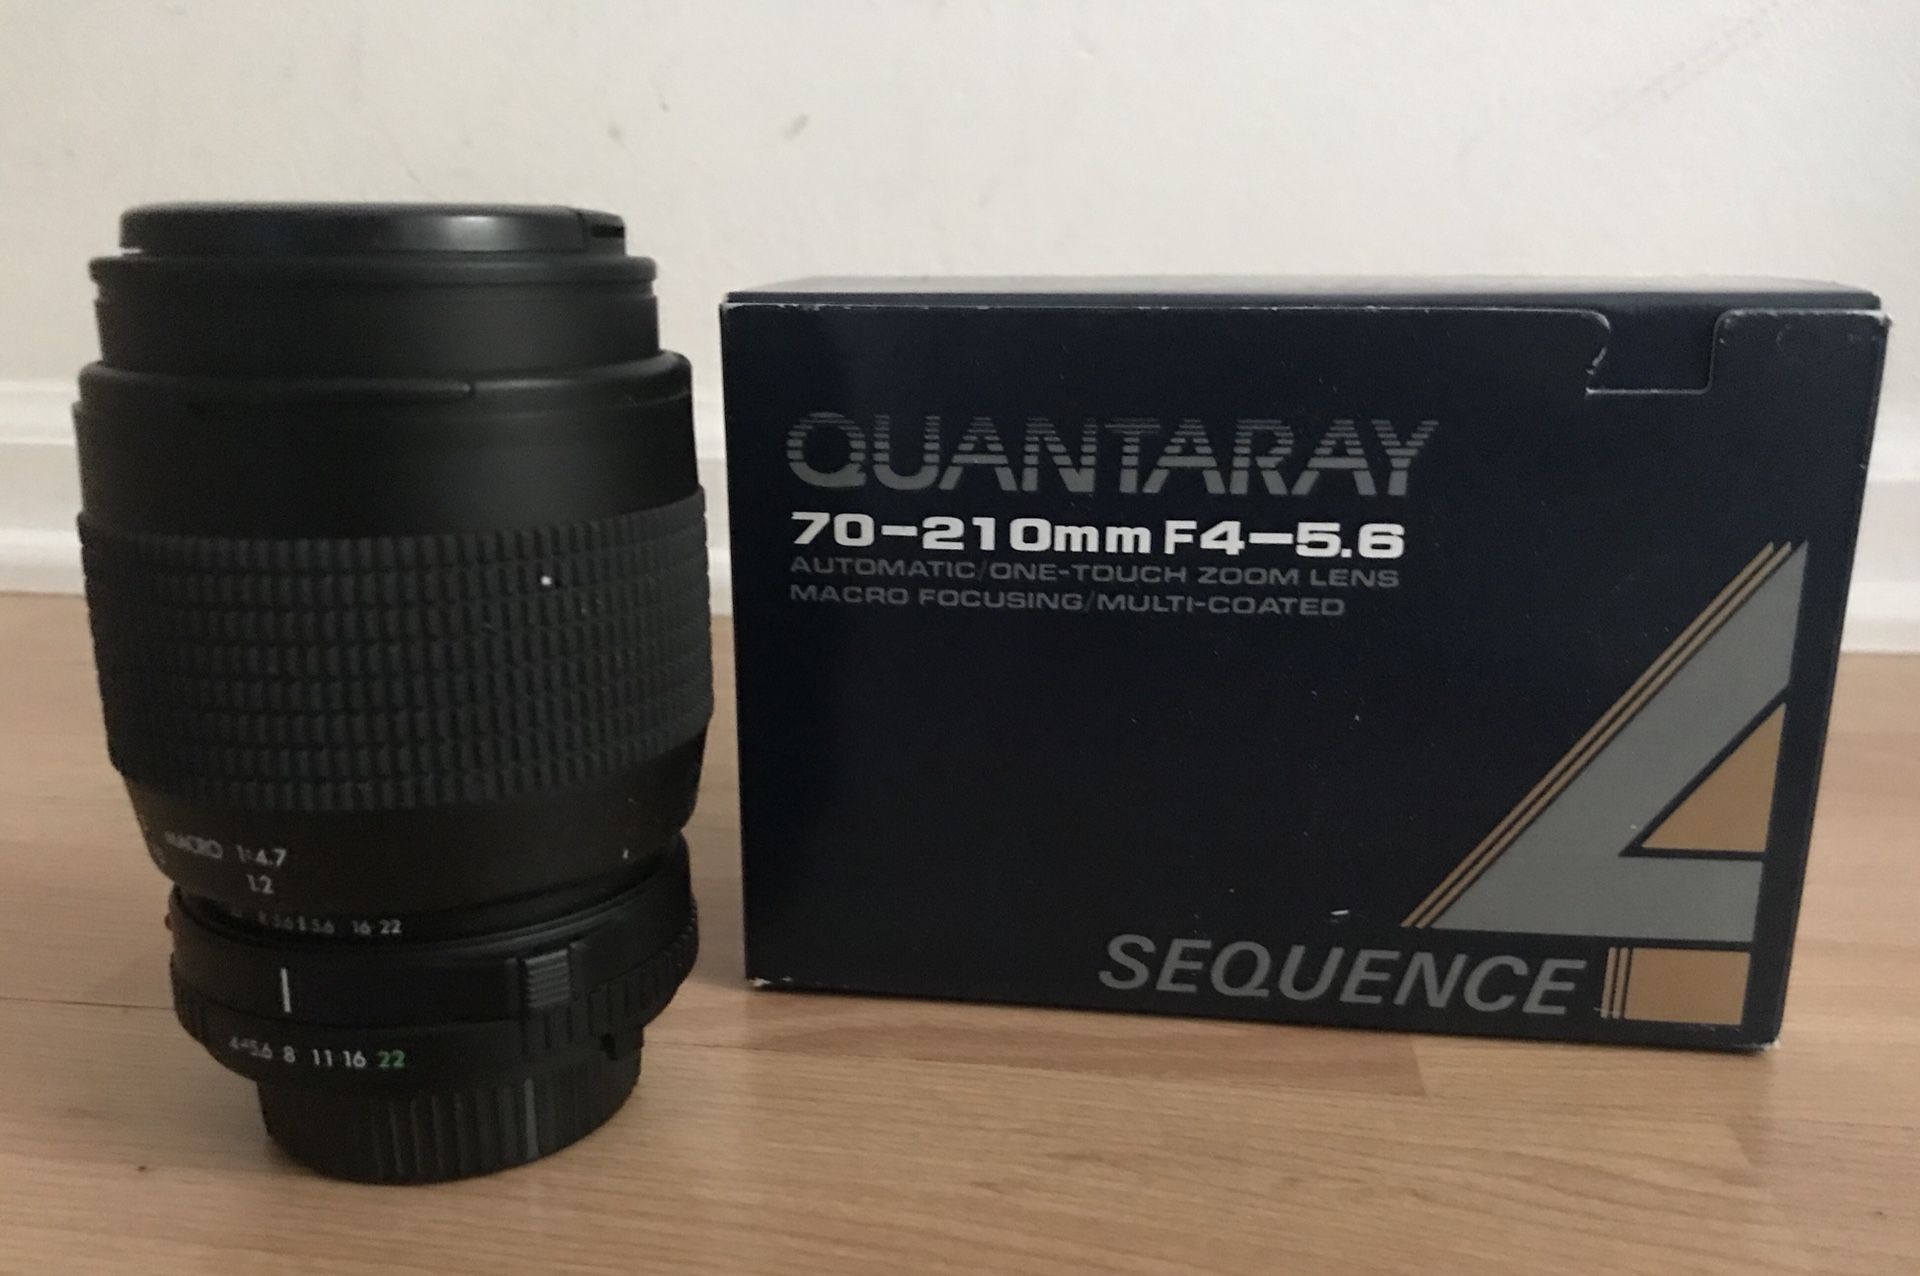 Quantaray 70-210mm F4-5.6 Zoom Lens